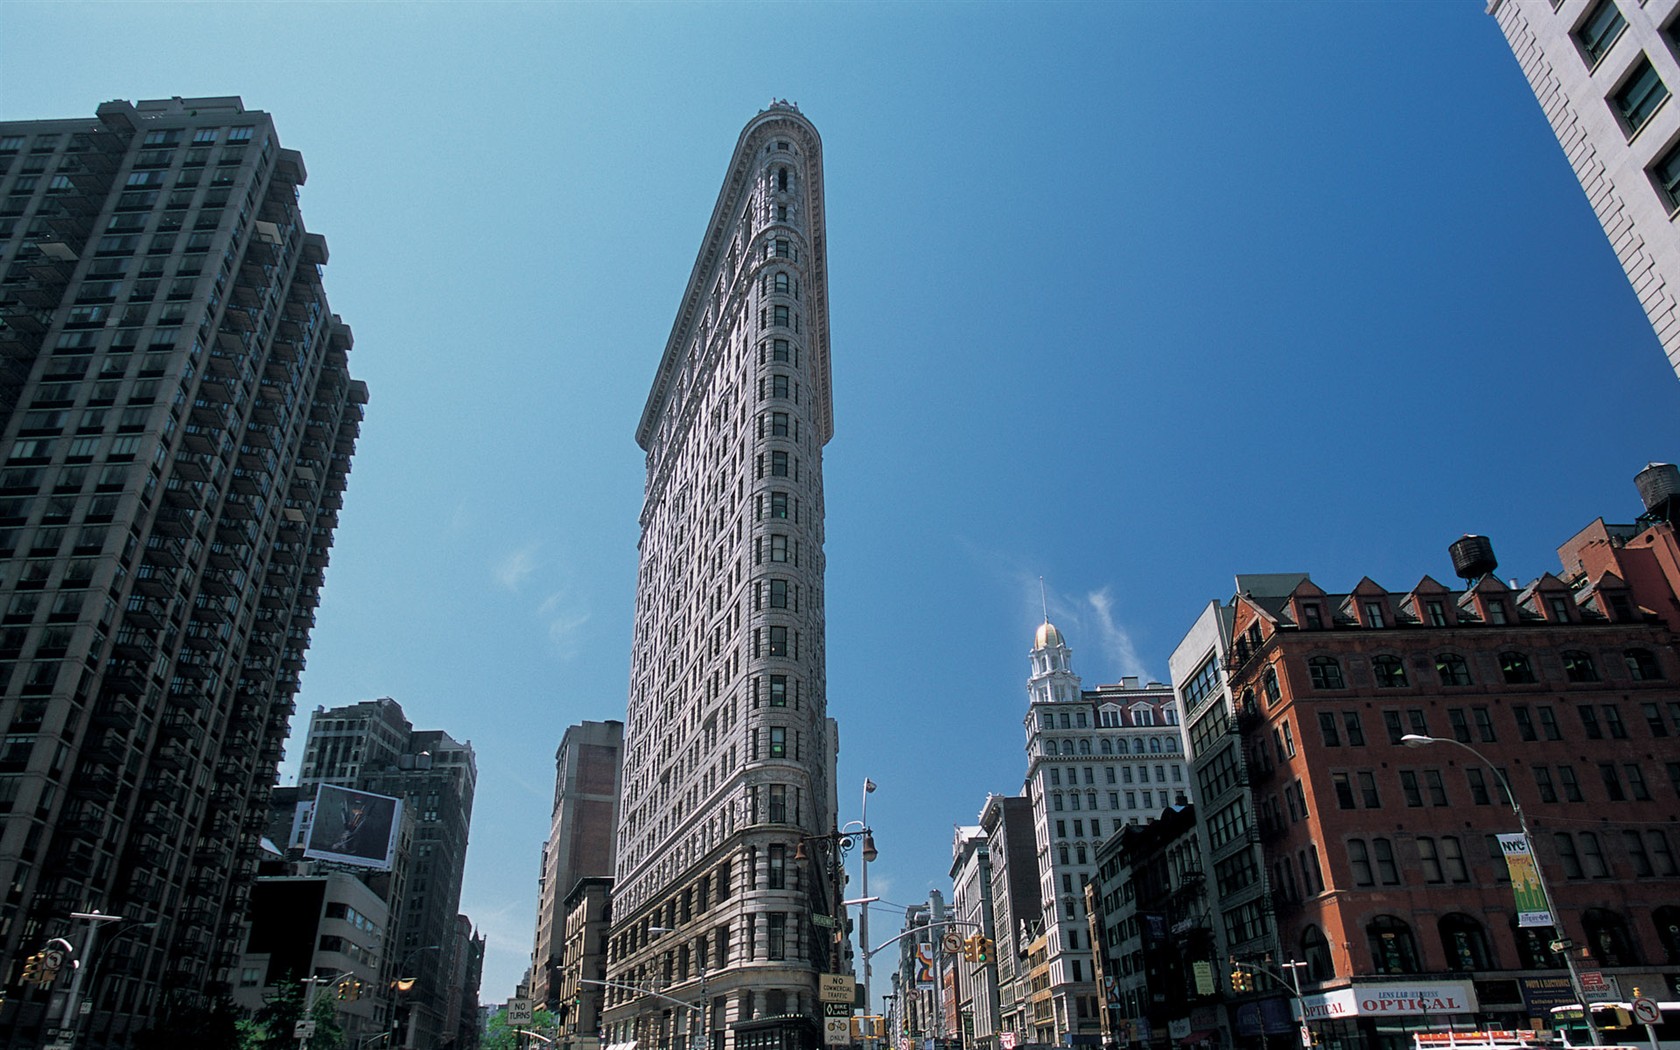 Animé de la ville de New York Building #8 - 1680x1050